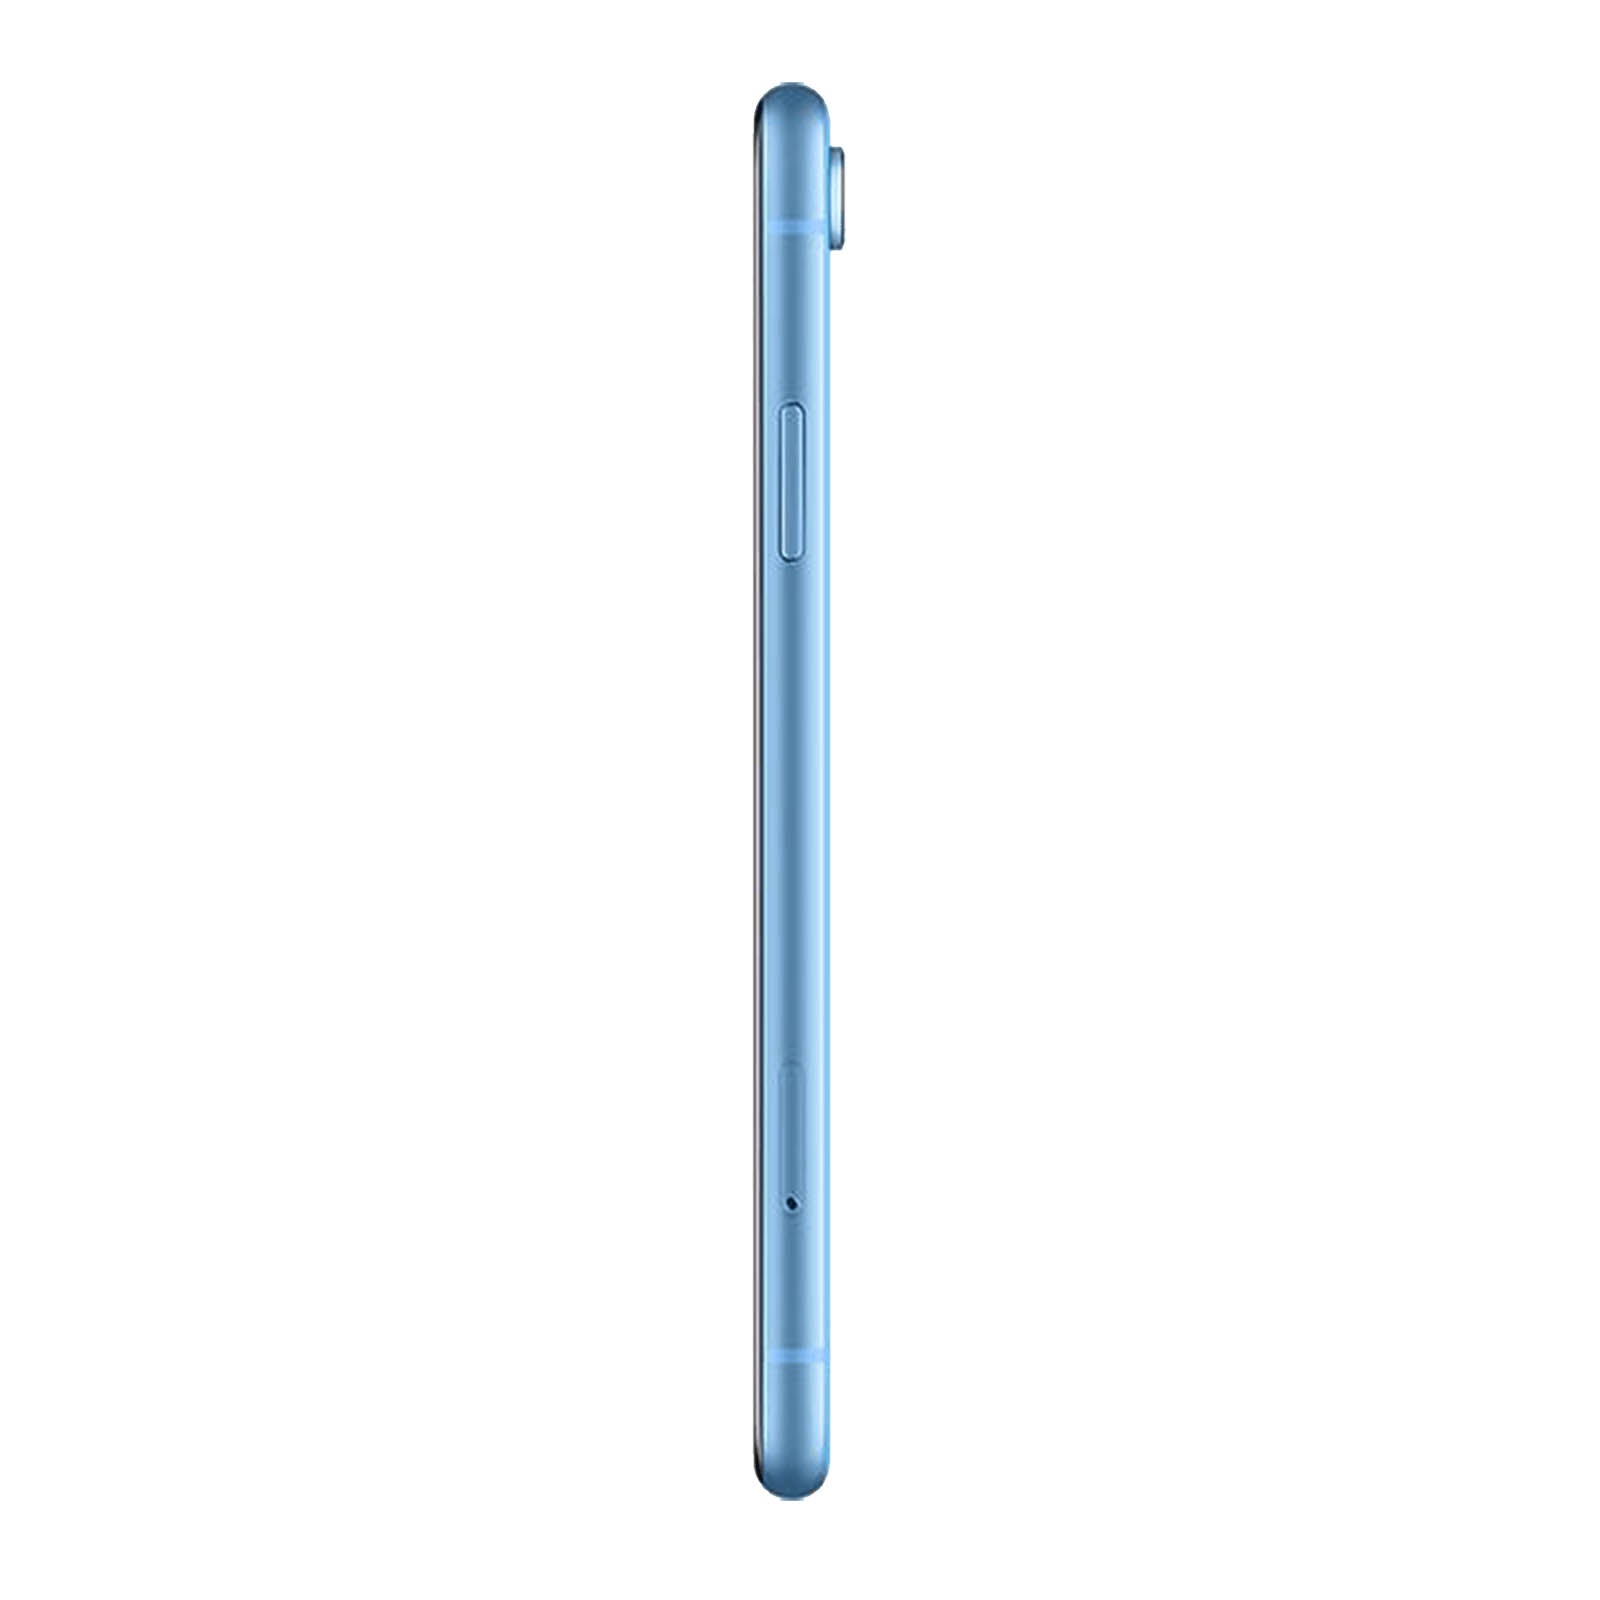 Apple iPhone XR 64GB Blue Fair - T-Mobile